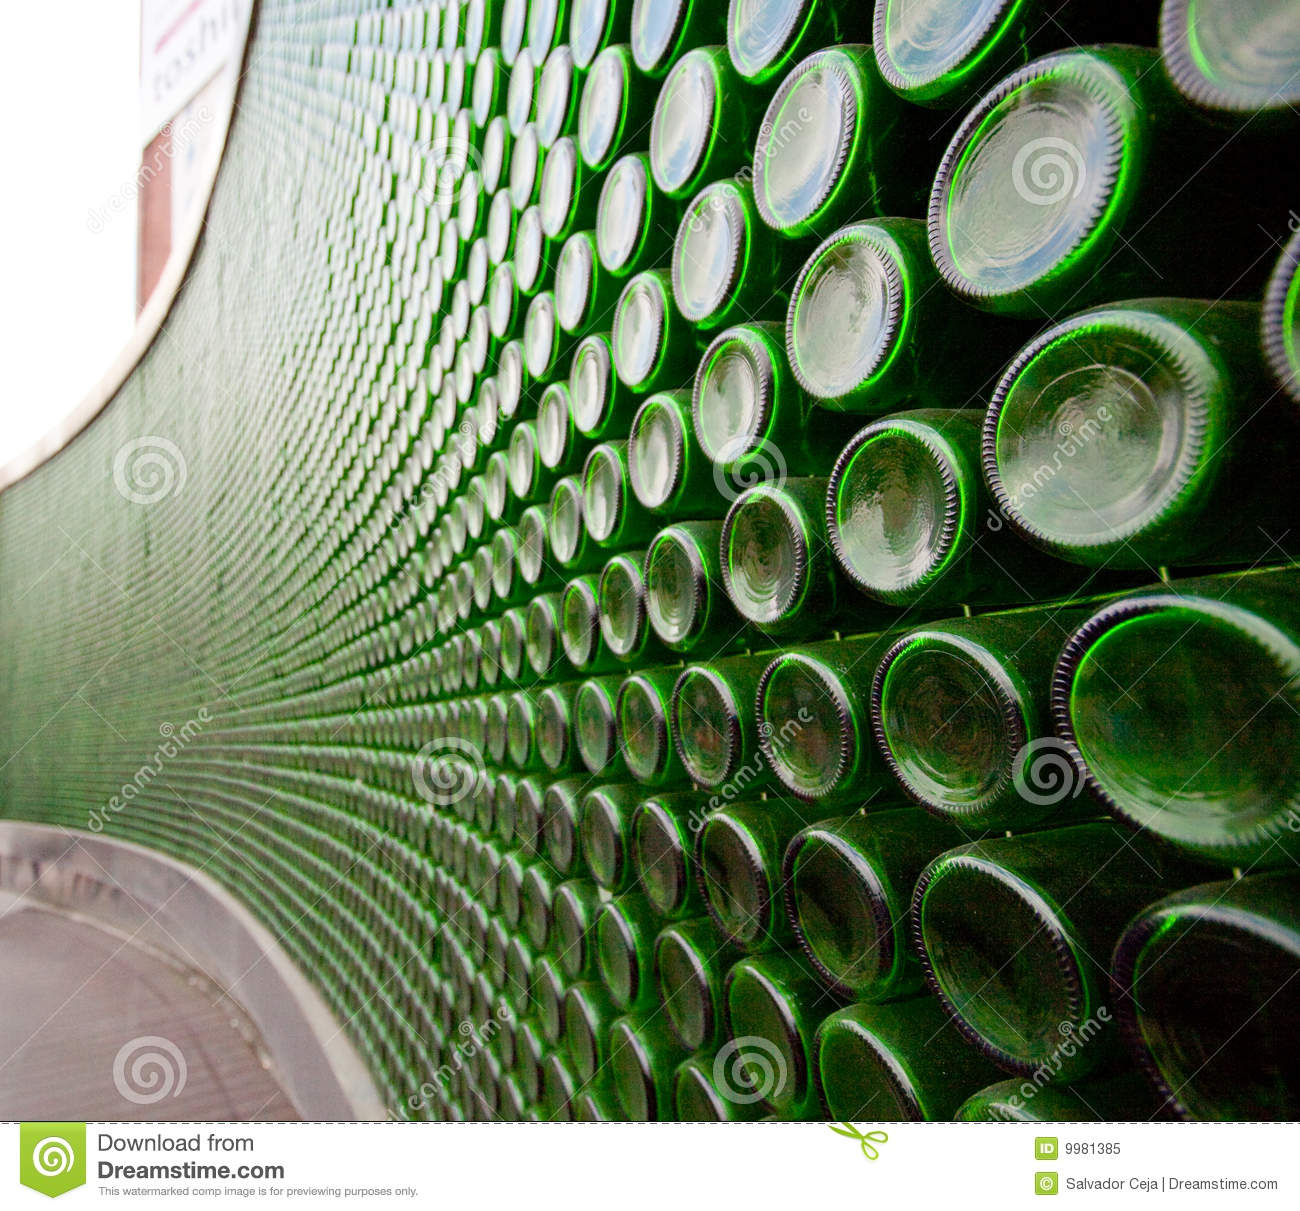 mur-vert-de-bouteille-en-verre-9981385.jpg